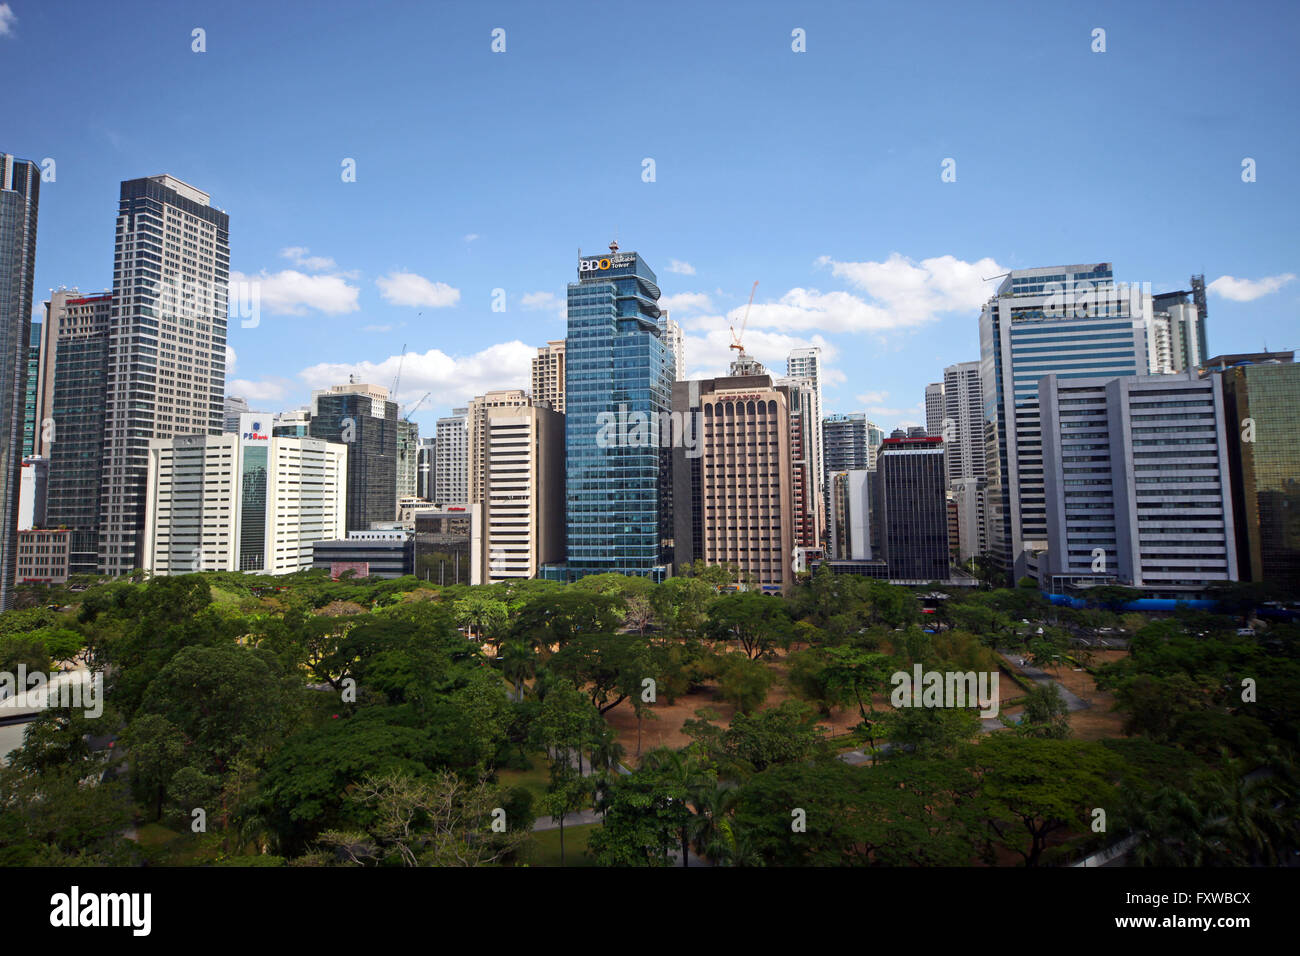 Les immeubles de grande hauteur de l'hôtel Peninsula Manille PHILIPPINES ASIE 18 Avril 2015 Banque D'Images